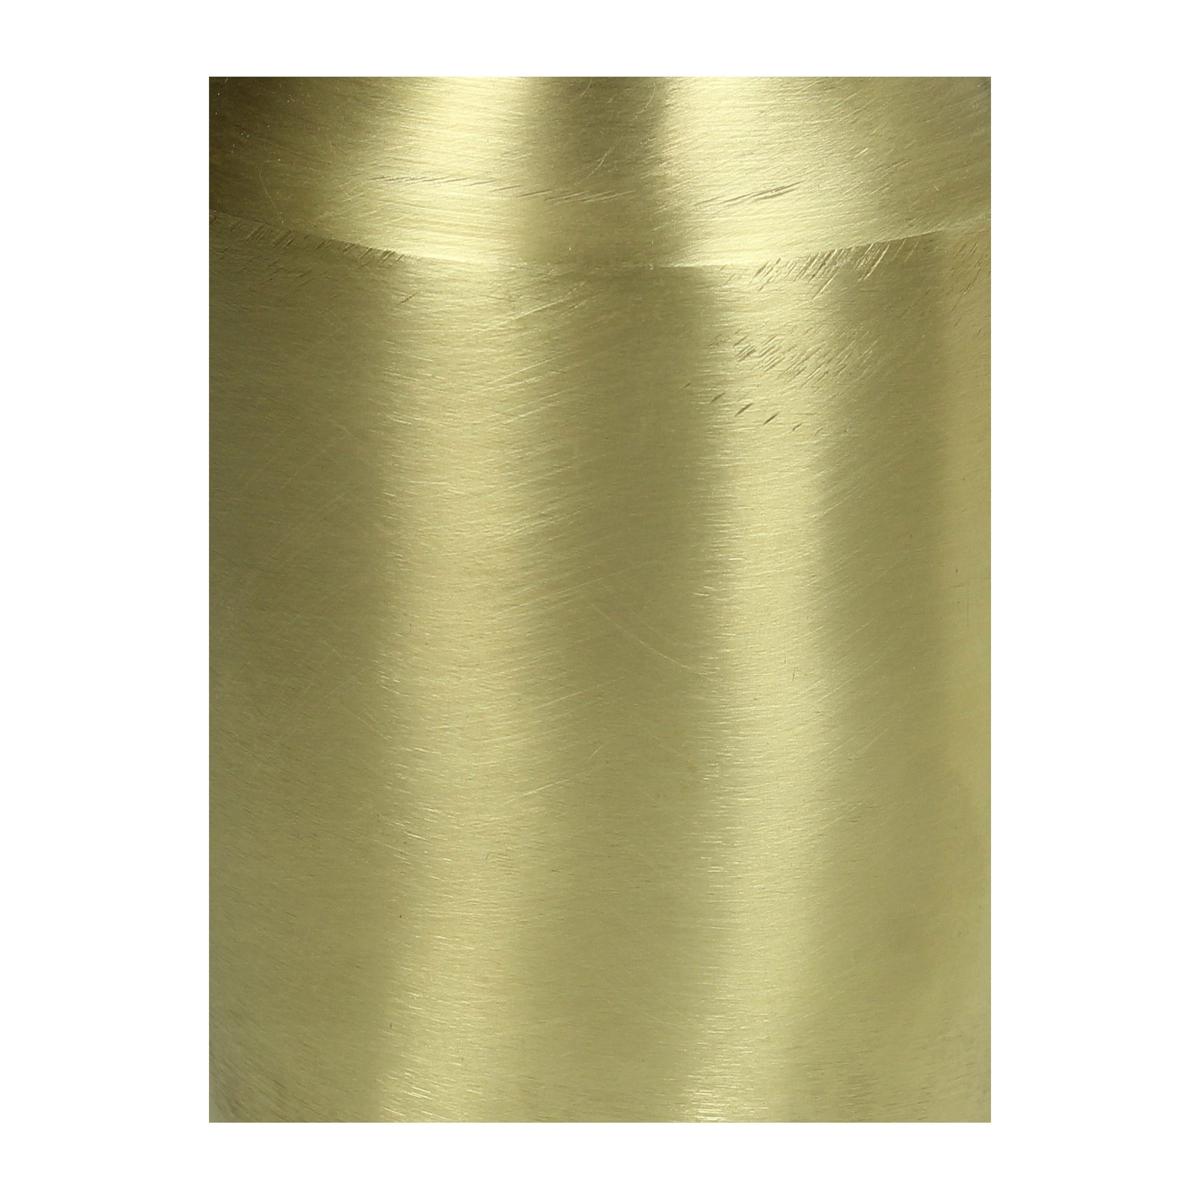 ArteLibre Βάζο Μεταλλικό Χρυσό 05151541